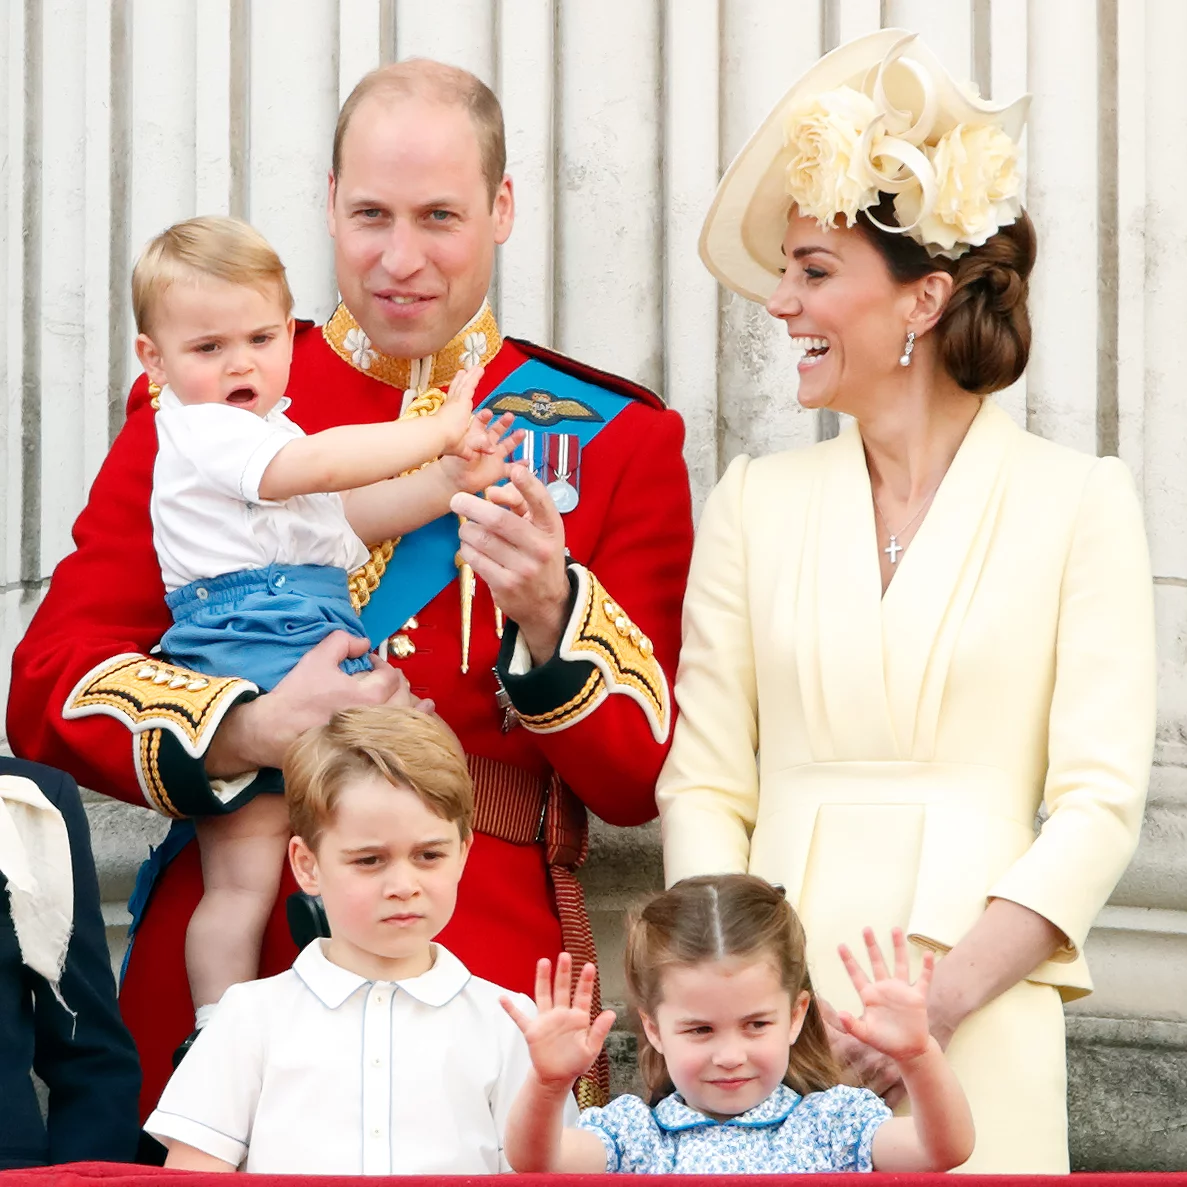 Кейт миддлтон дети возраст. Принц Умльям и Кейт Мидлтон. Принц Уильям и Кейт Миддлтон. Дети Кейт Миддлтон и принца Уильяма. Принц Вильям и Кейт дети.